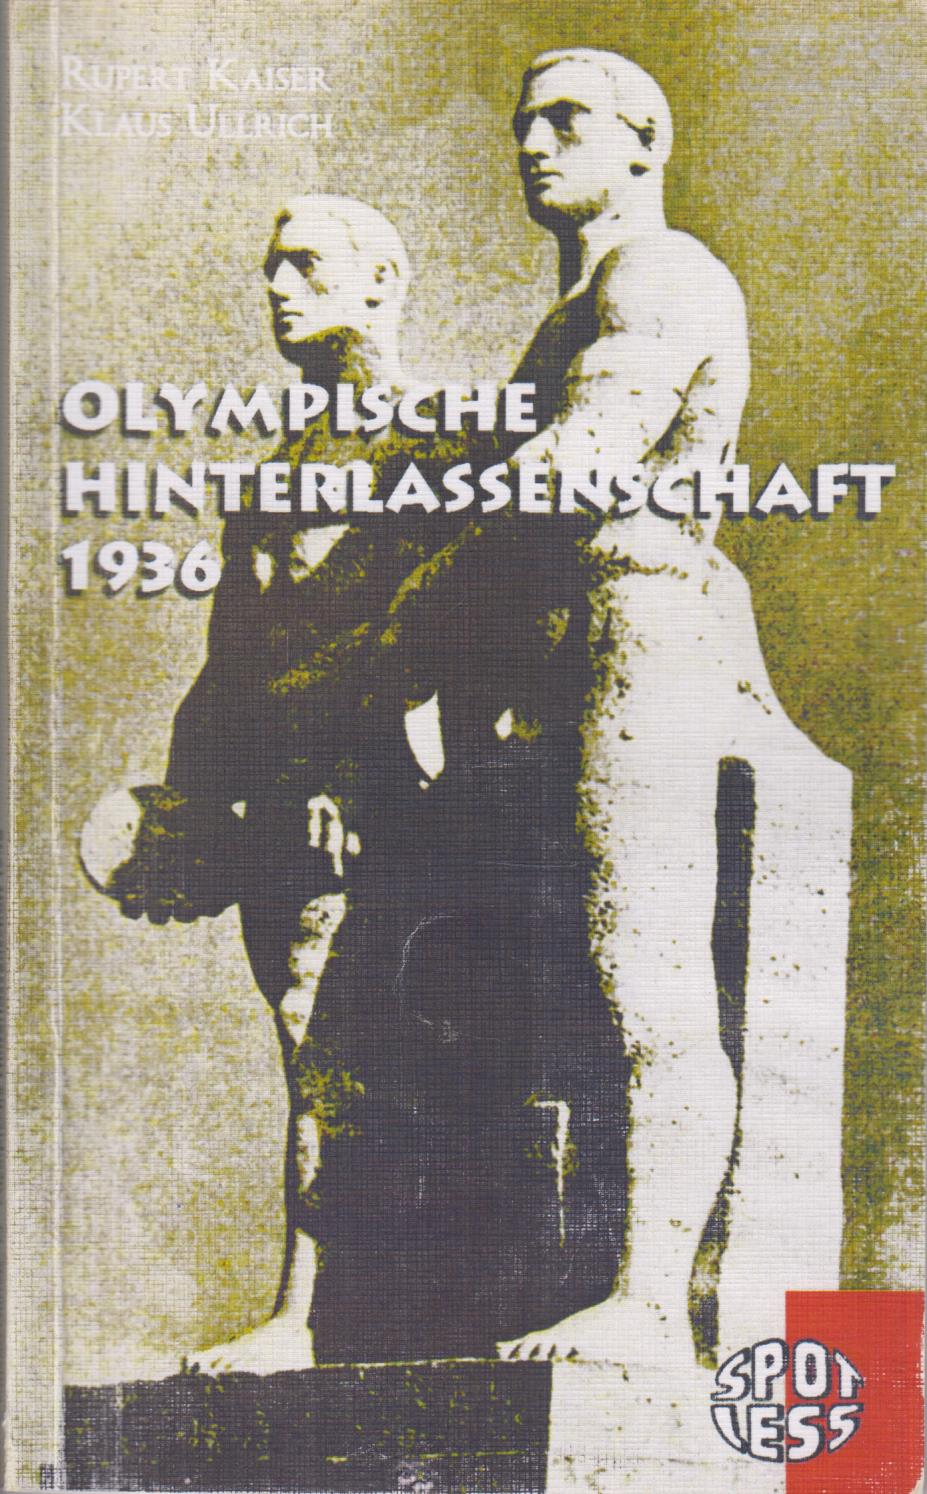 Olympische Hinterlassenschaft 1936 - Kaiser, Rupert; Ullrich, Klaus